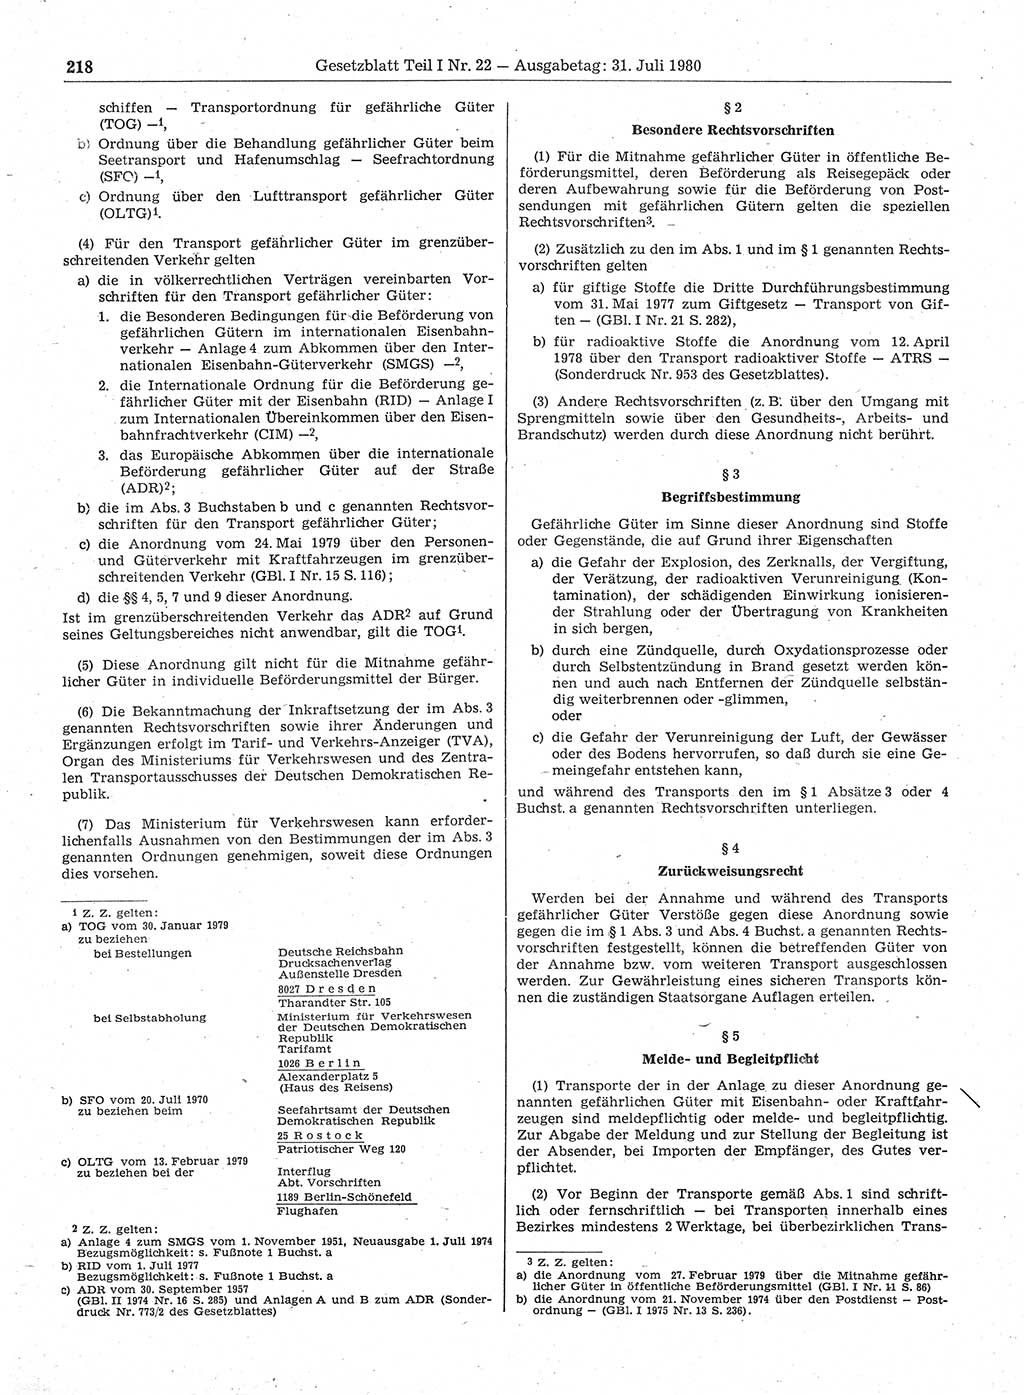 Gesetzblatt (GBl.) der Deutschen Demokratischen Republik (DDR) Teil Ⅰ 1980, Seite 218 (GBl. DDR Ⅰ 1980, S. 218)